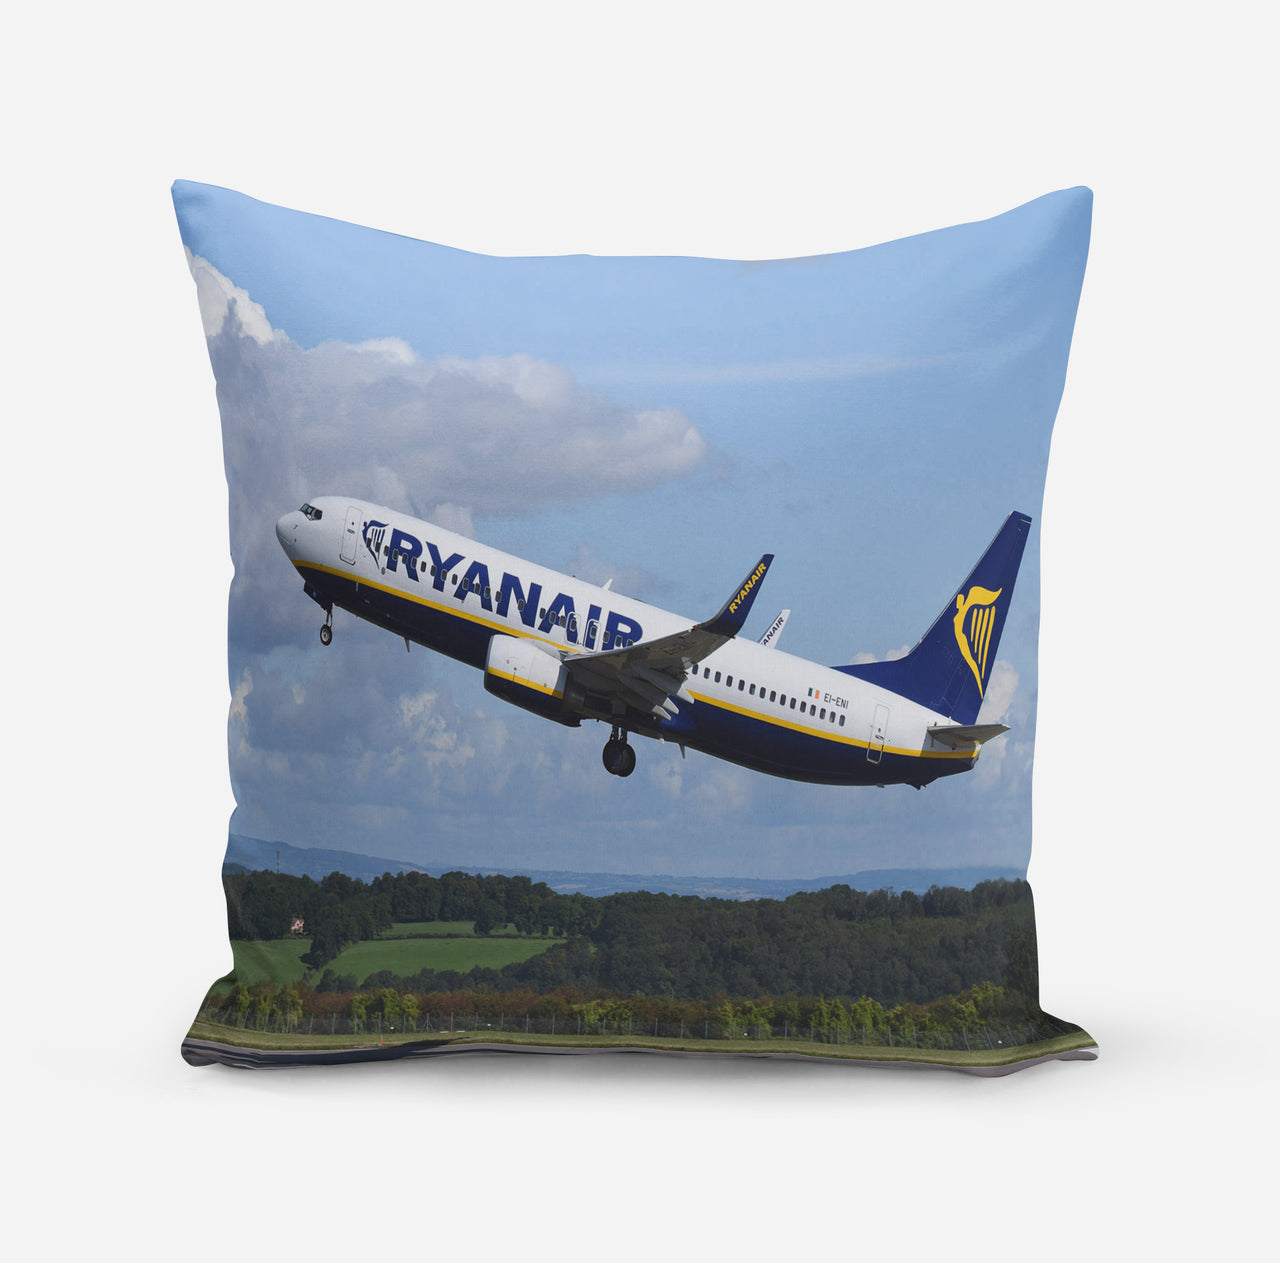 Departing Ryanair's Boeing 737 Designed Pillows